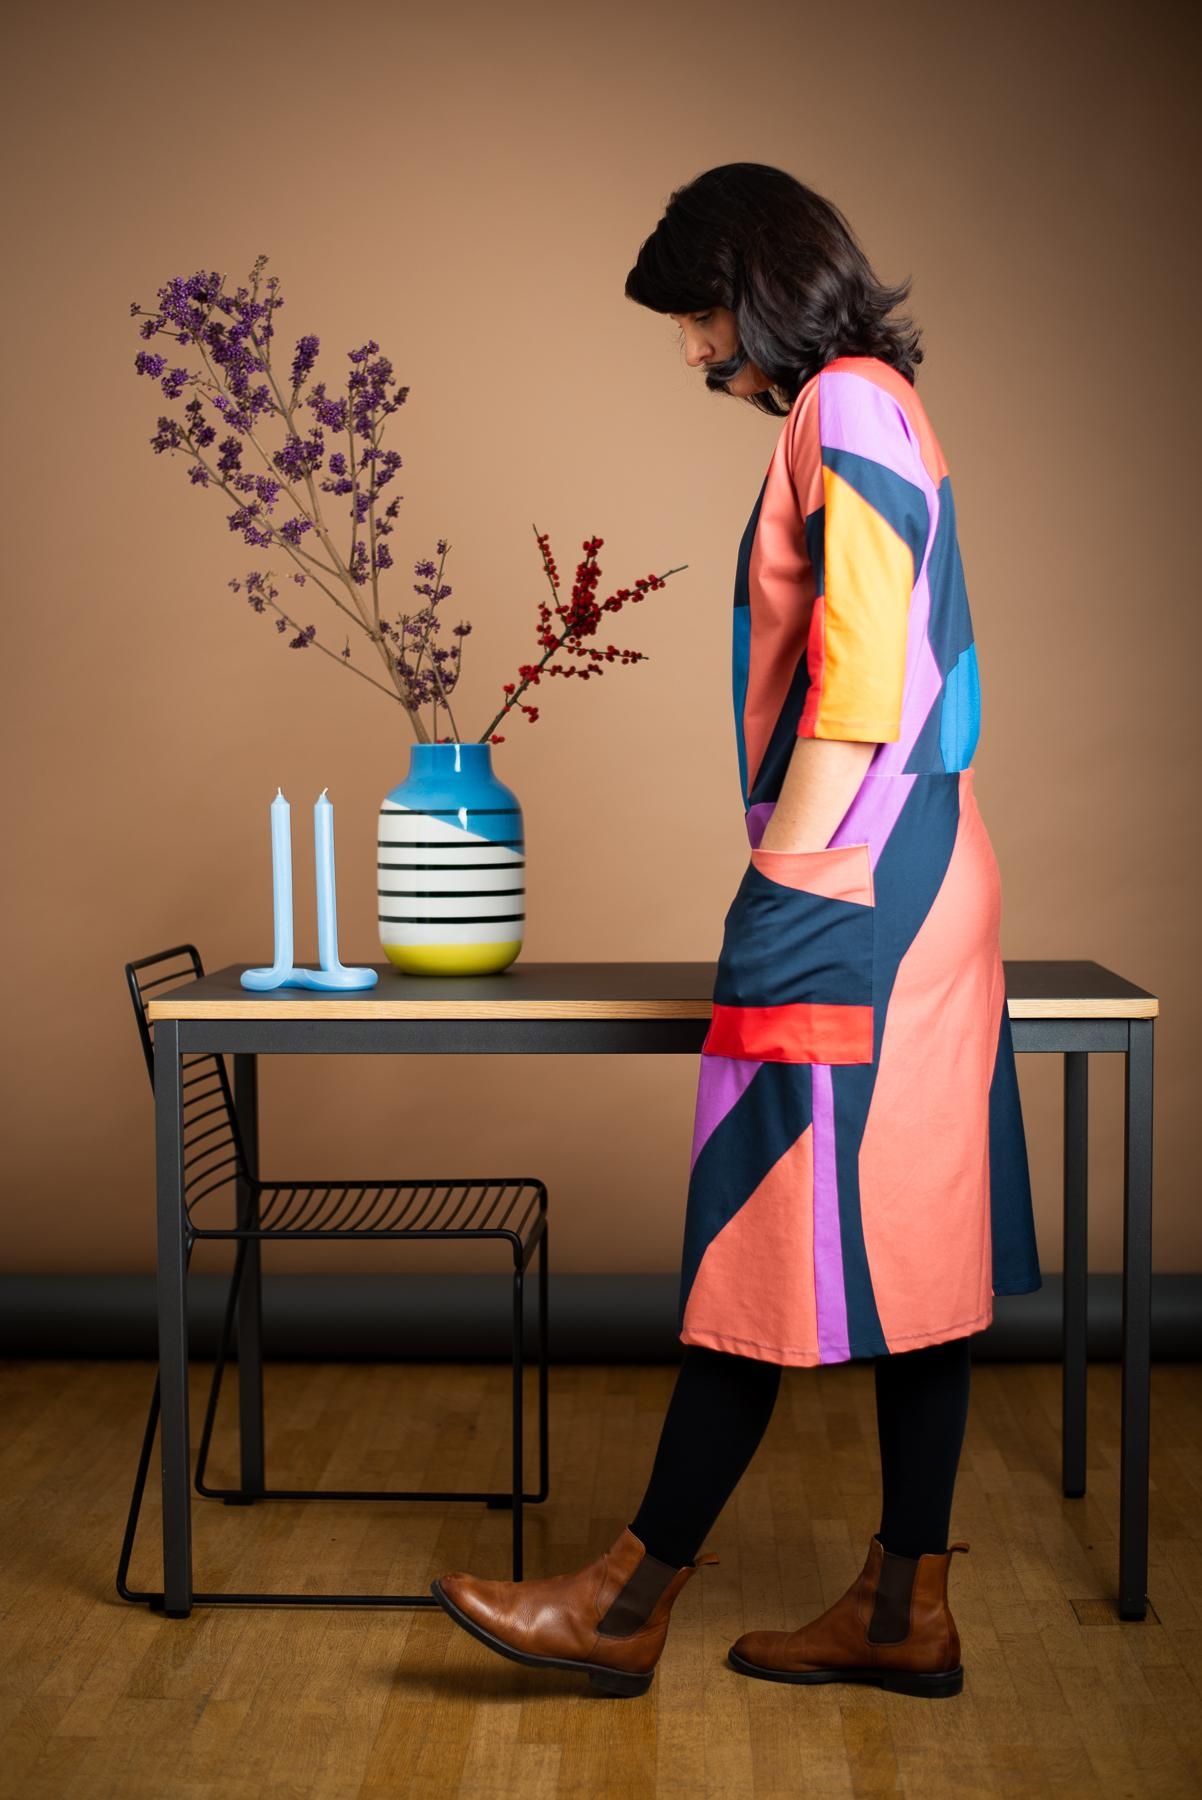 Kommt gut in die neue Woche! Mir hilft Farbe ja immer ❤️ #ootd #fashioncrush #slowfashion #office #vase #kerze #deko 